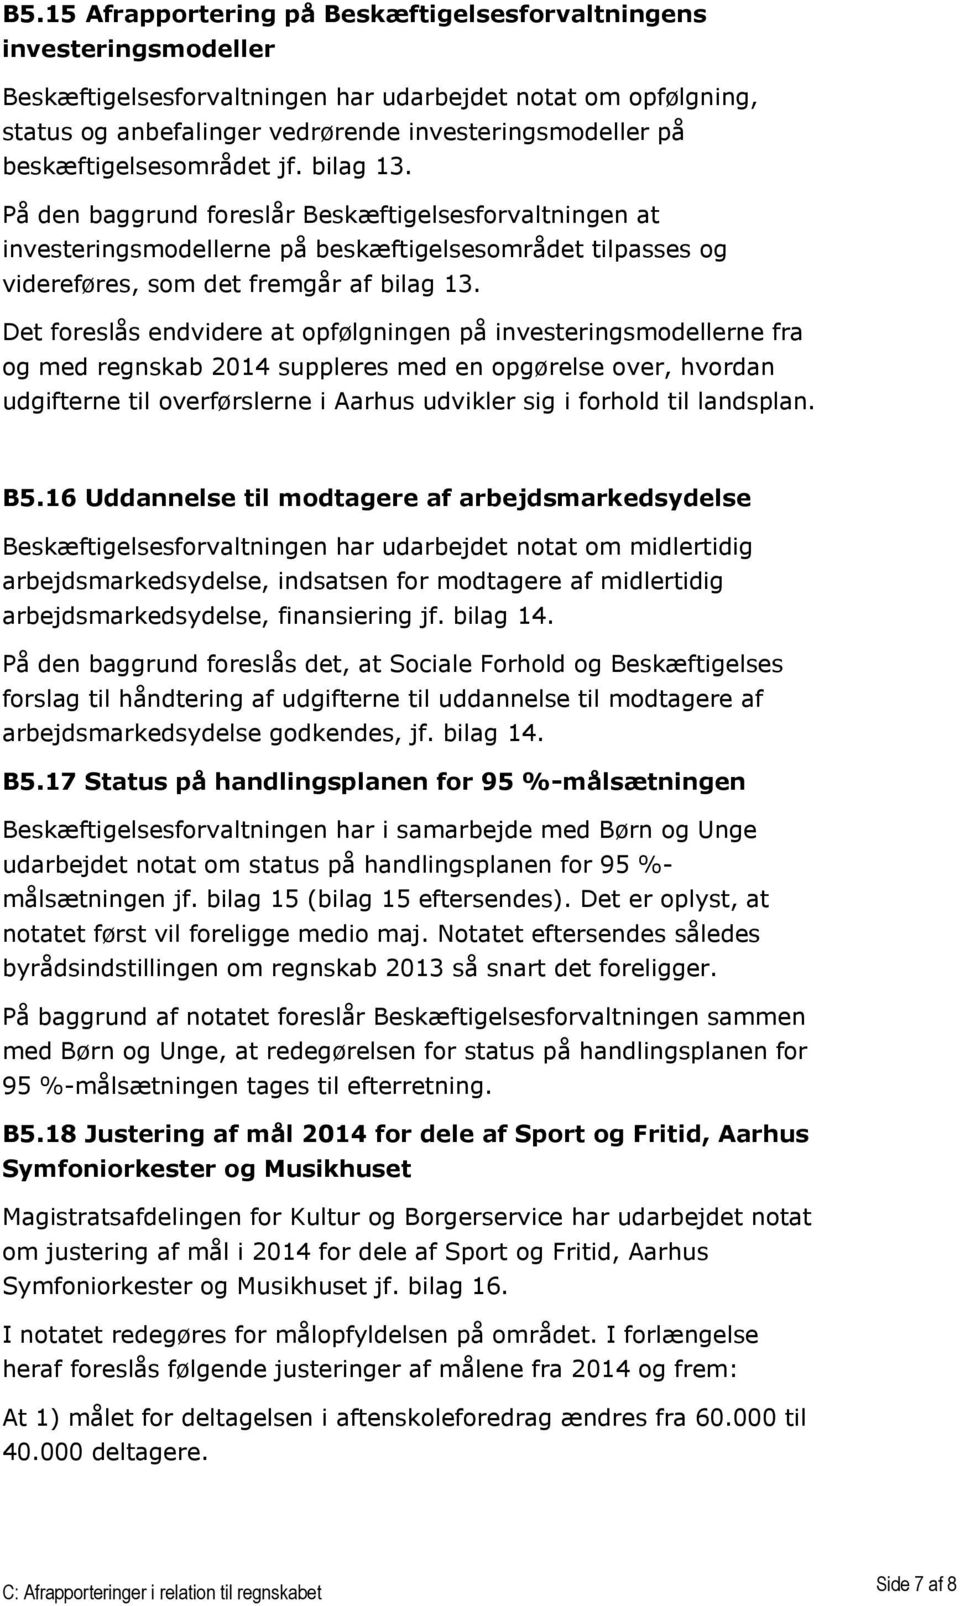 Det foreslås endvidere at opfølgningen på investeringsmodellerne fra og med regnskab 2014 suppleres med en opgørelse over, hvordan udgifterne til overførslerne i Aarhus udvikler sig i forhold til